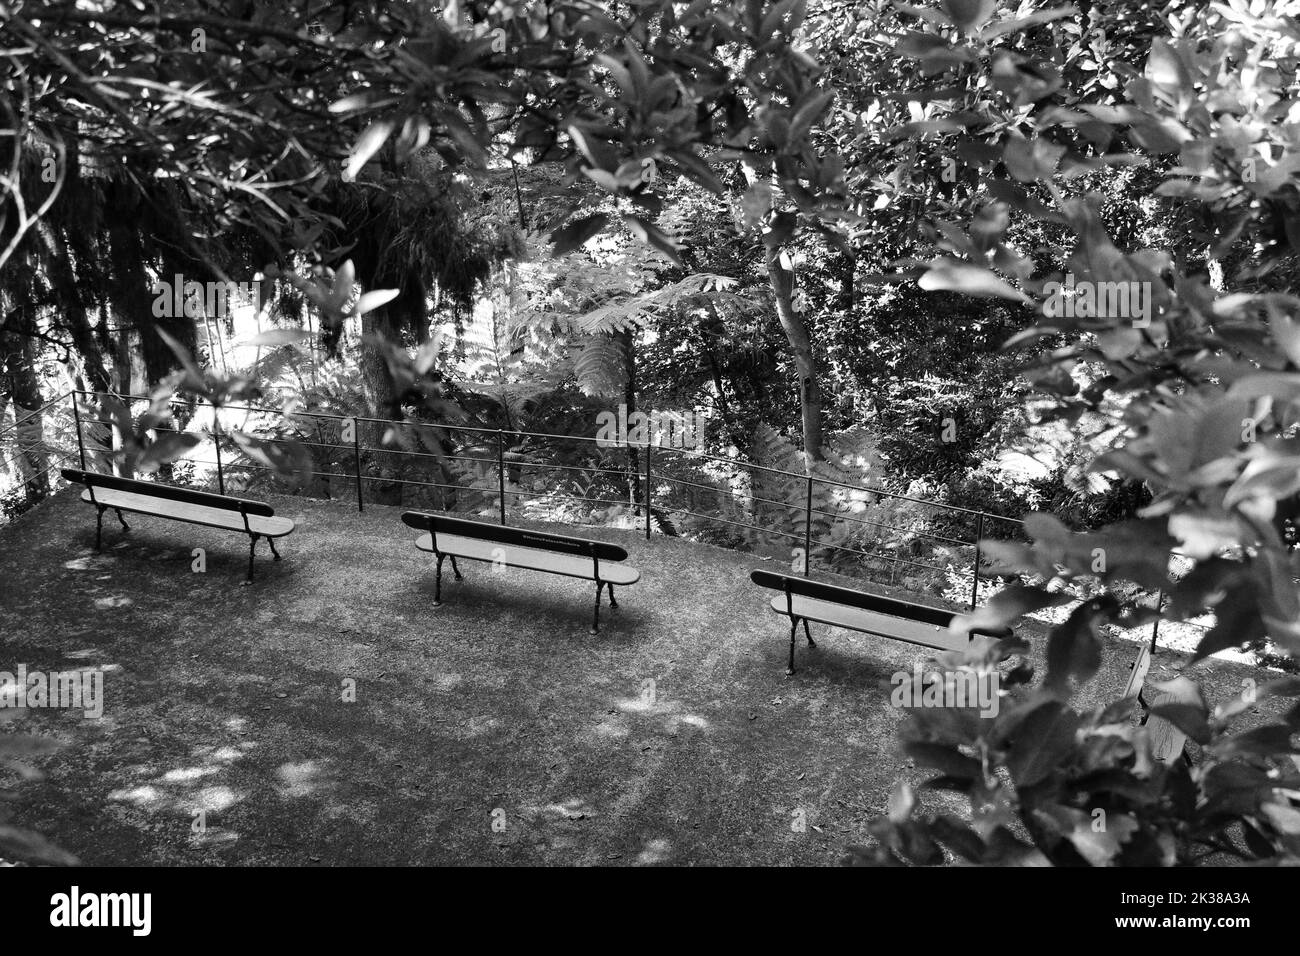 Une photo monochrome de trois bancs dans la jungle entourée d'arbres Banque D'Images